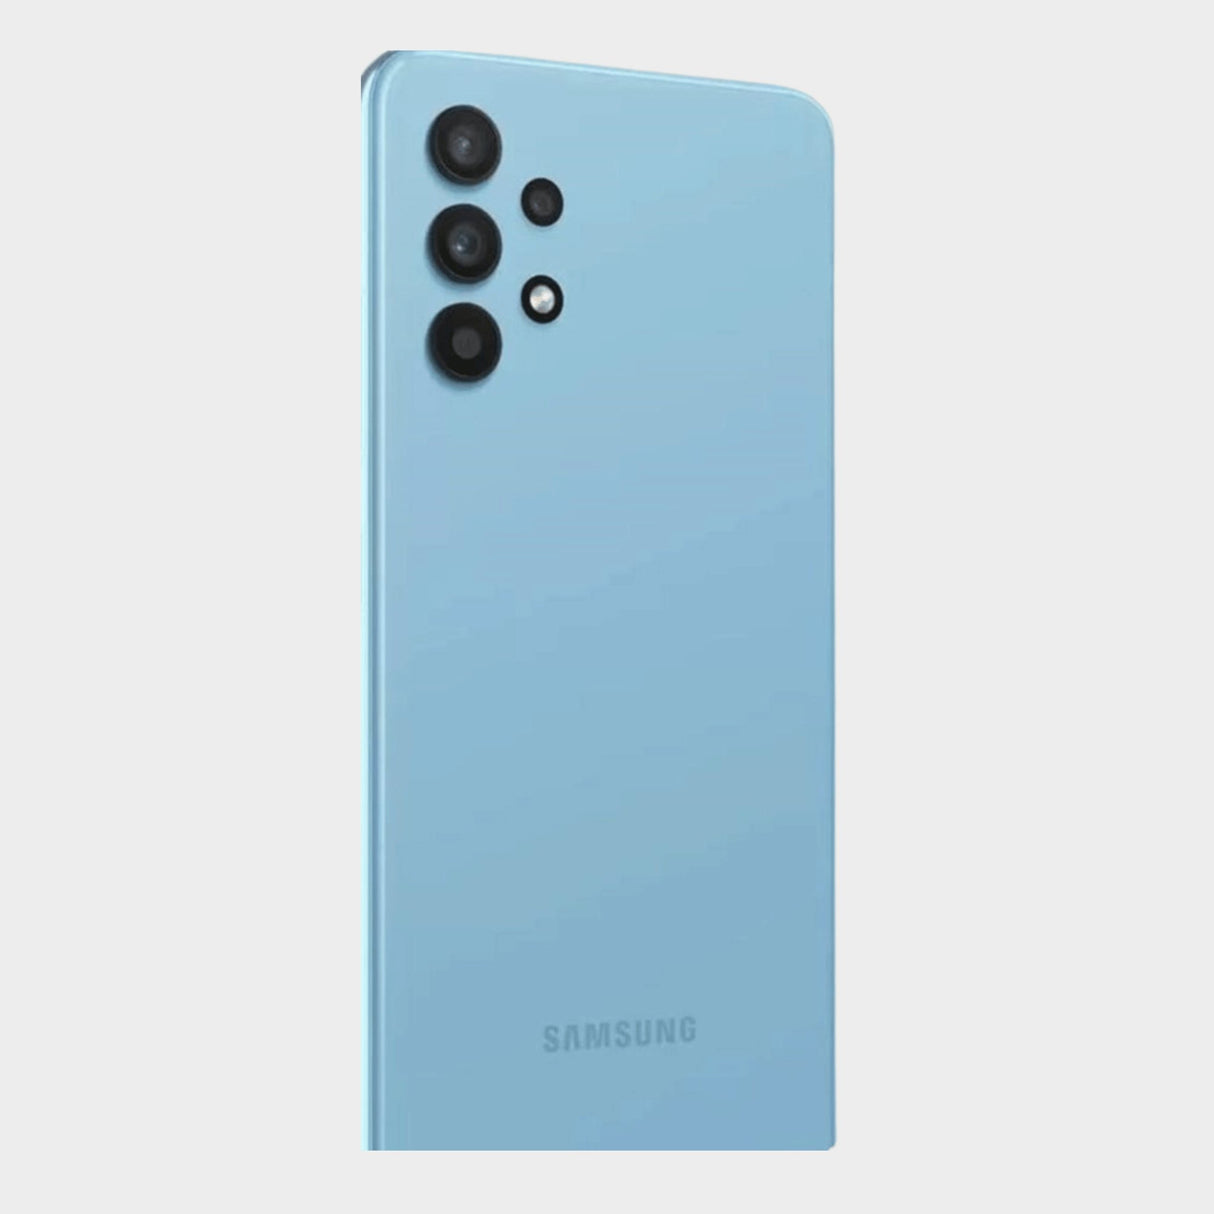 Samsung Galaxy A32 5G (64GB, 4GB) 6.5 inch 90Hz Display, 48MP Quad